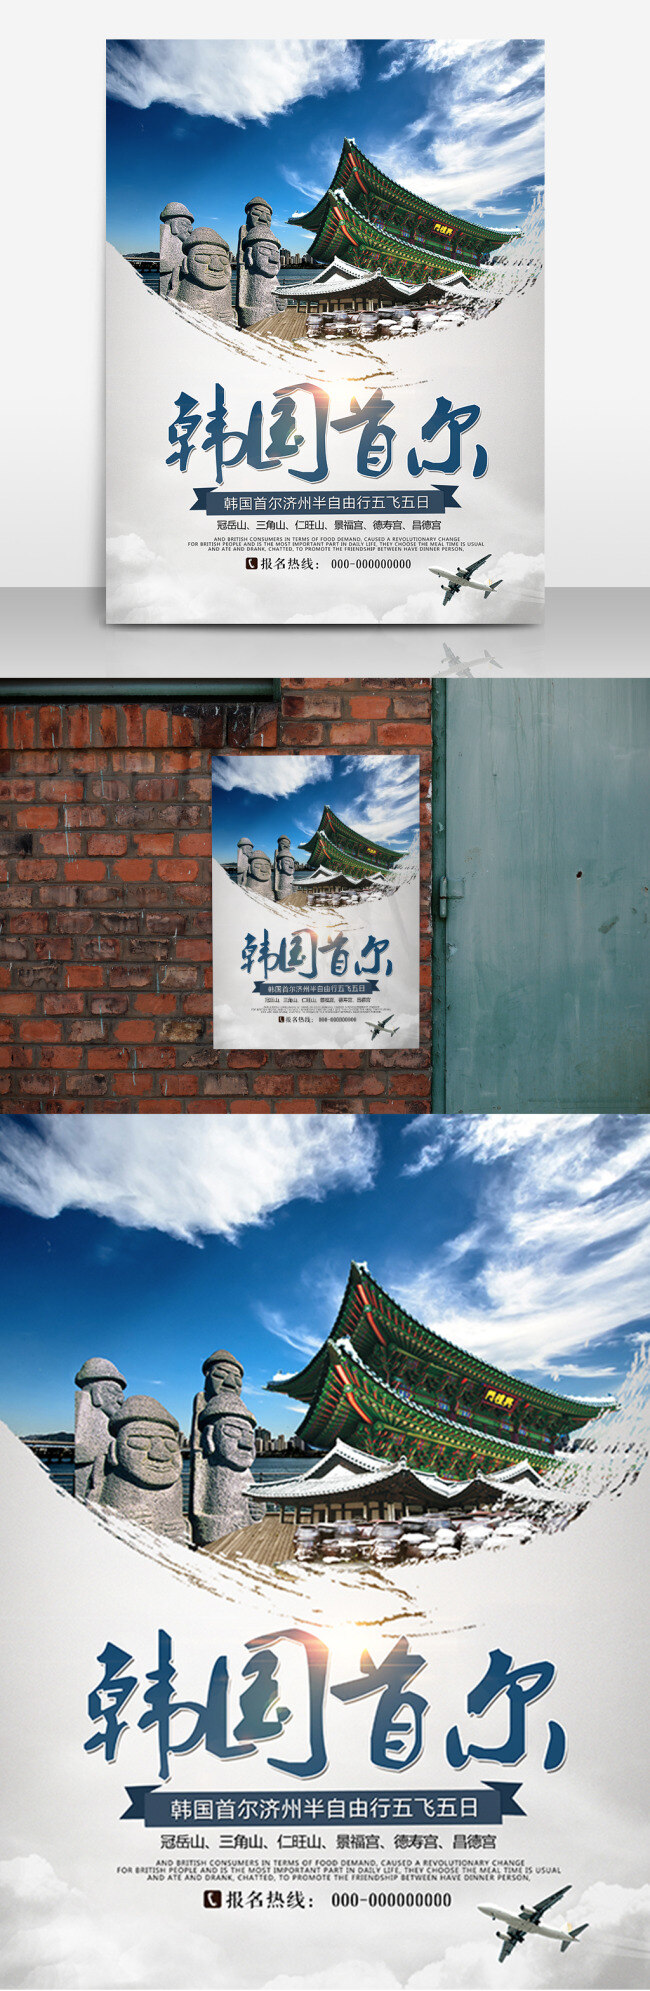 韩国 首 尔 旅游 海报 高清 首尔 高清psd 自由行 自驾游 出游 夏季 创意 简约 跟团